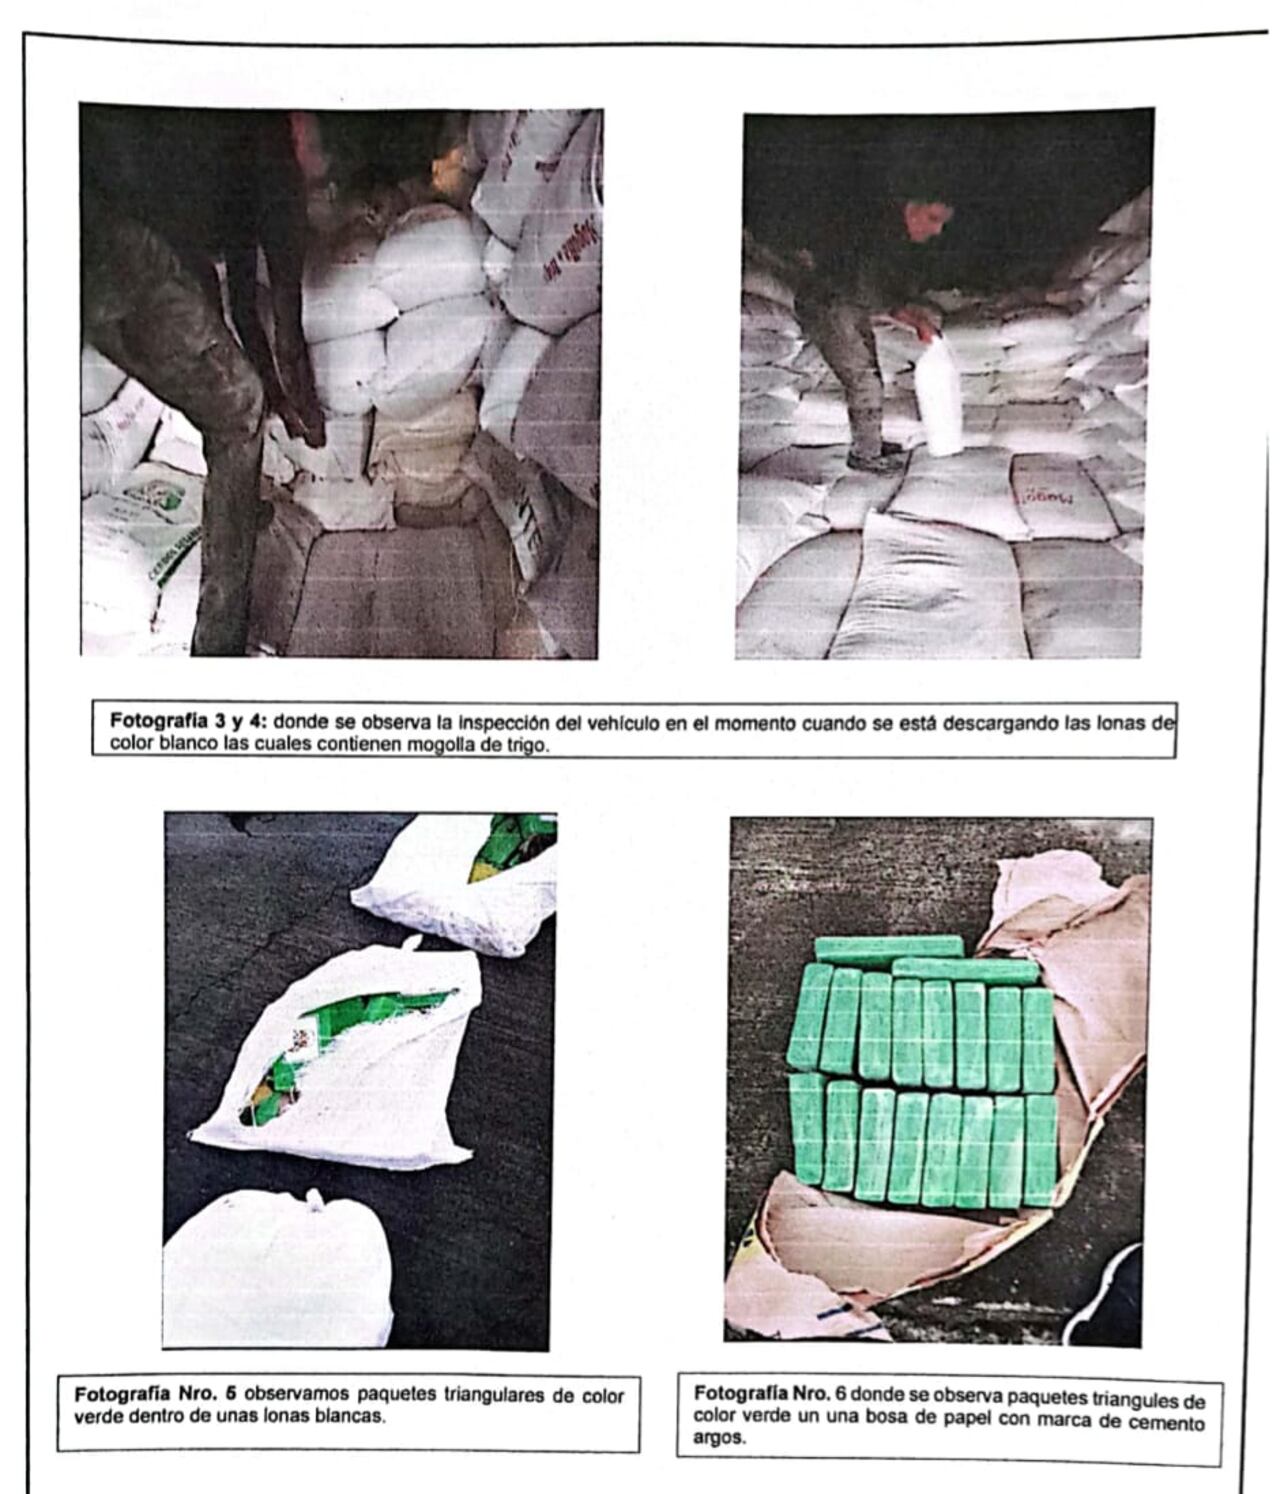 400 kilos de cocaína camuflados en comida para animales fue incautada en el Valle del Cauca.